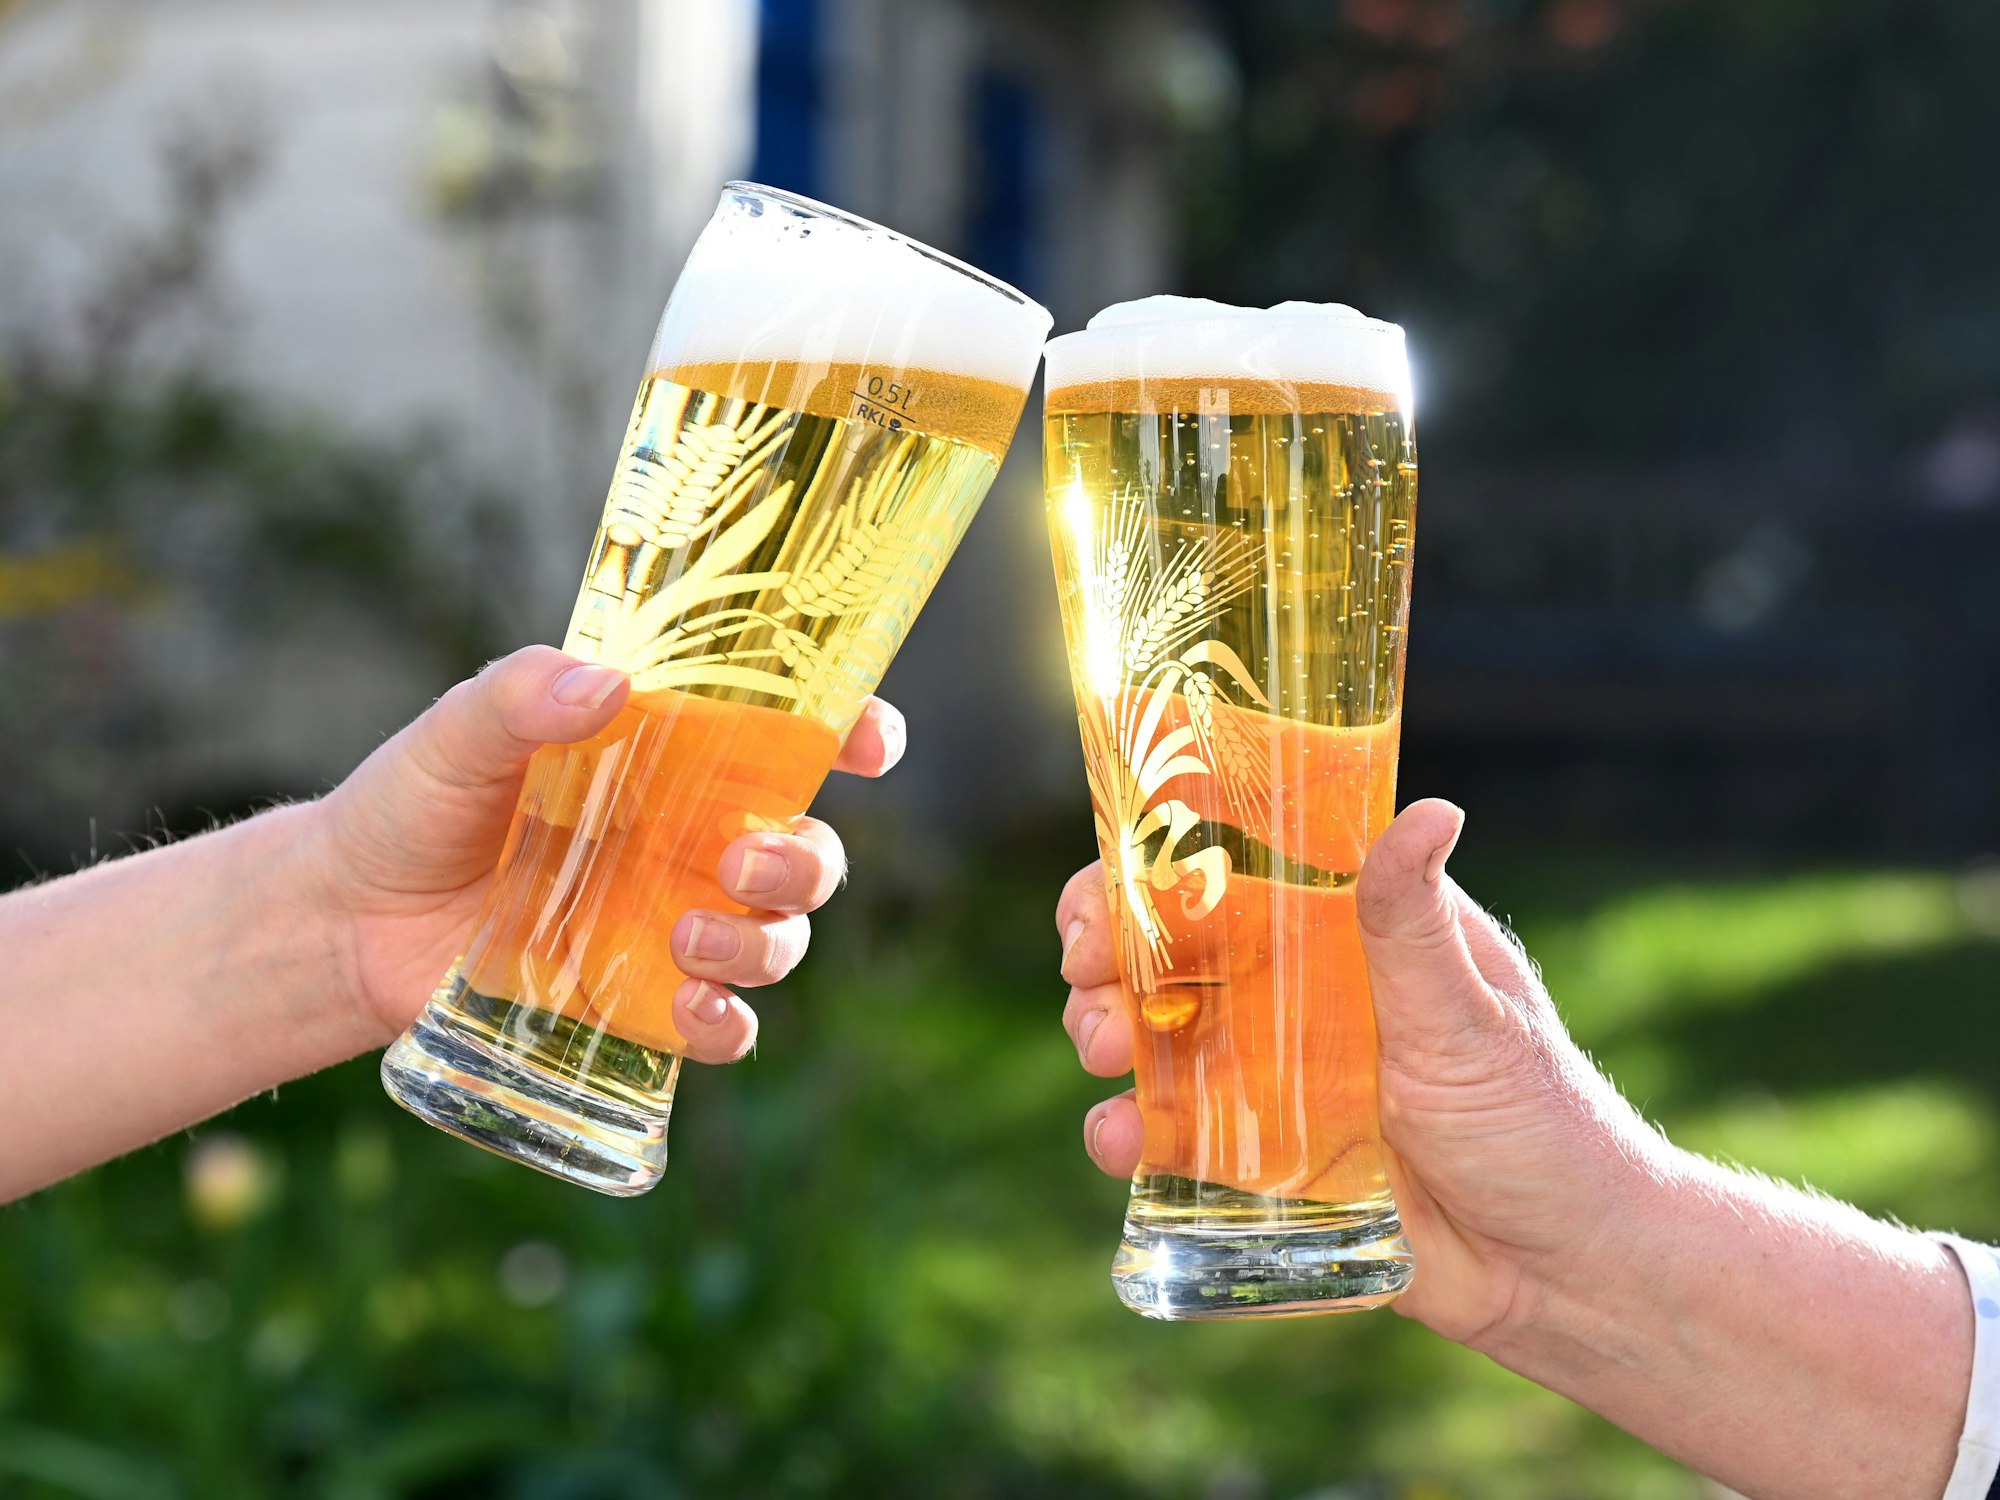 Mit Bier gefüllte Gläser, mit denen zwei Personen anstoßen.